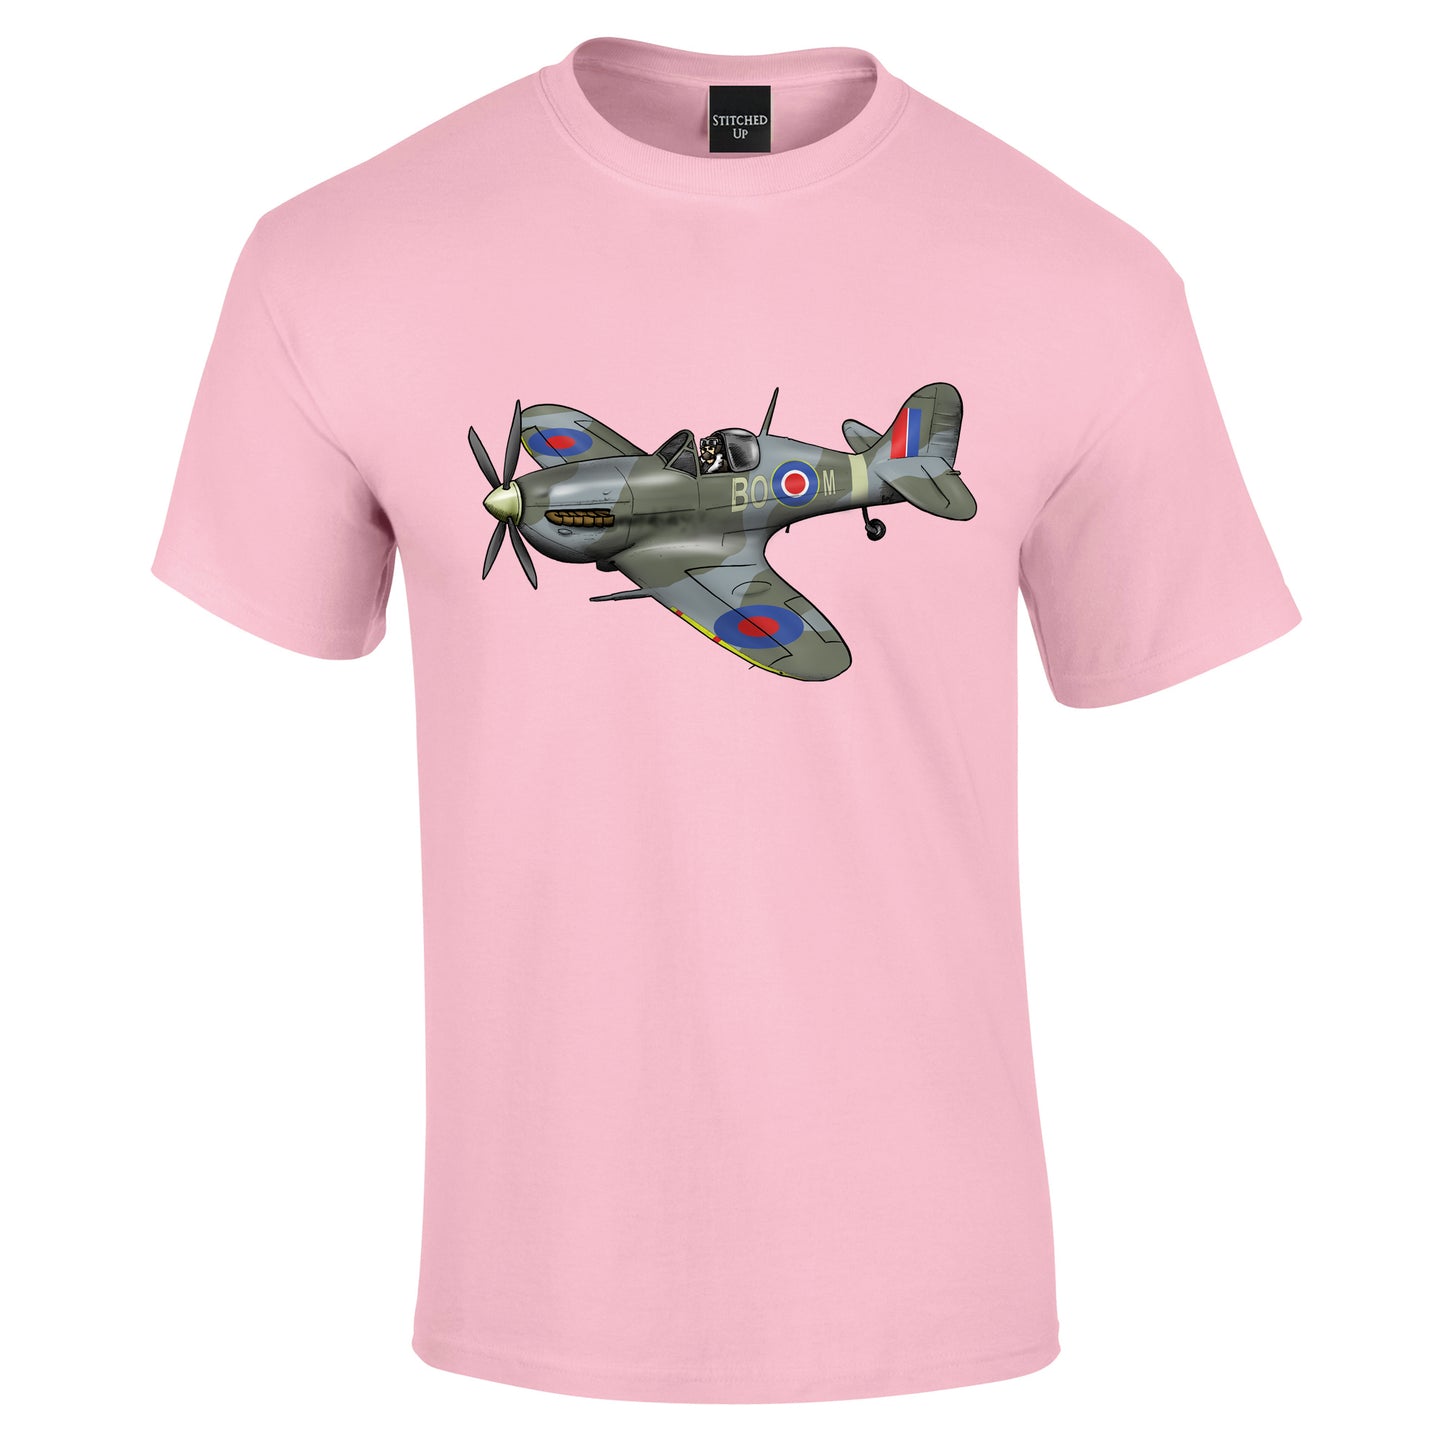 Spitfire Battle of Britain T-Shirt